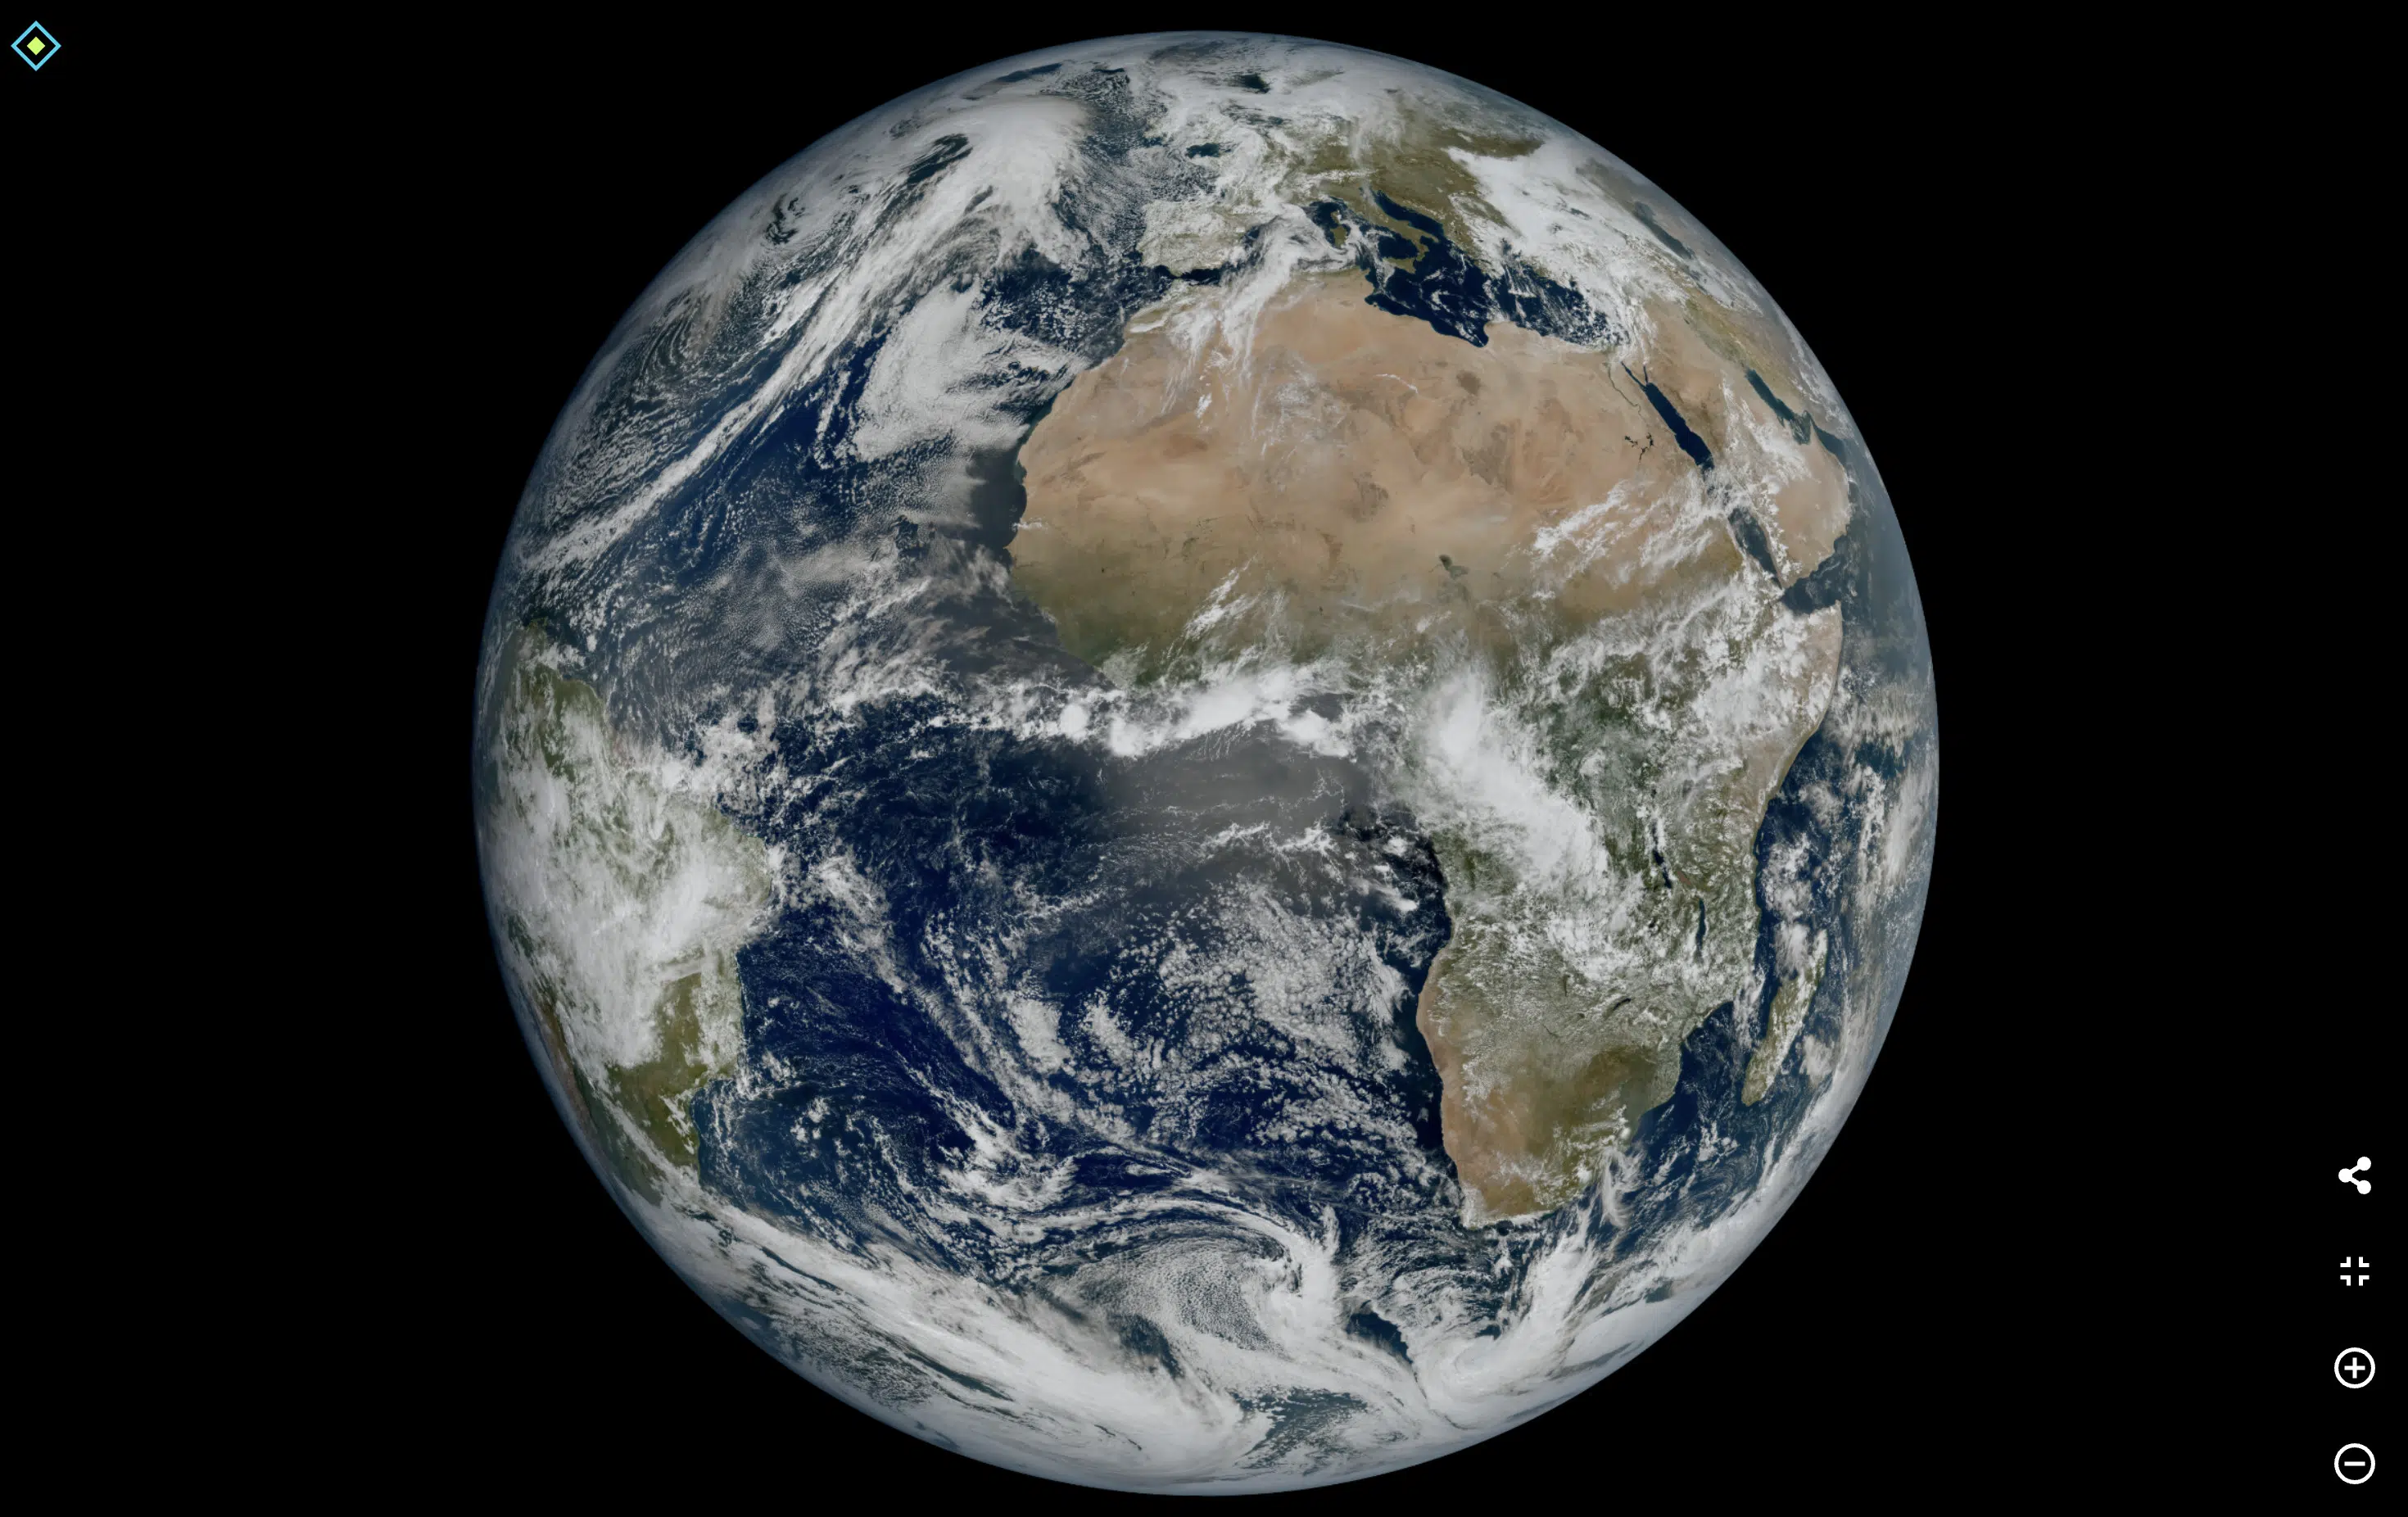 欧空局全新气象卫星MTG-I1发回首张地球图像 细节令人惊叹 - EVLIT